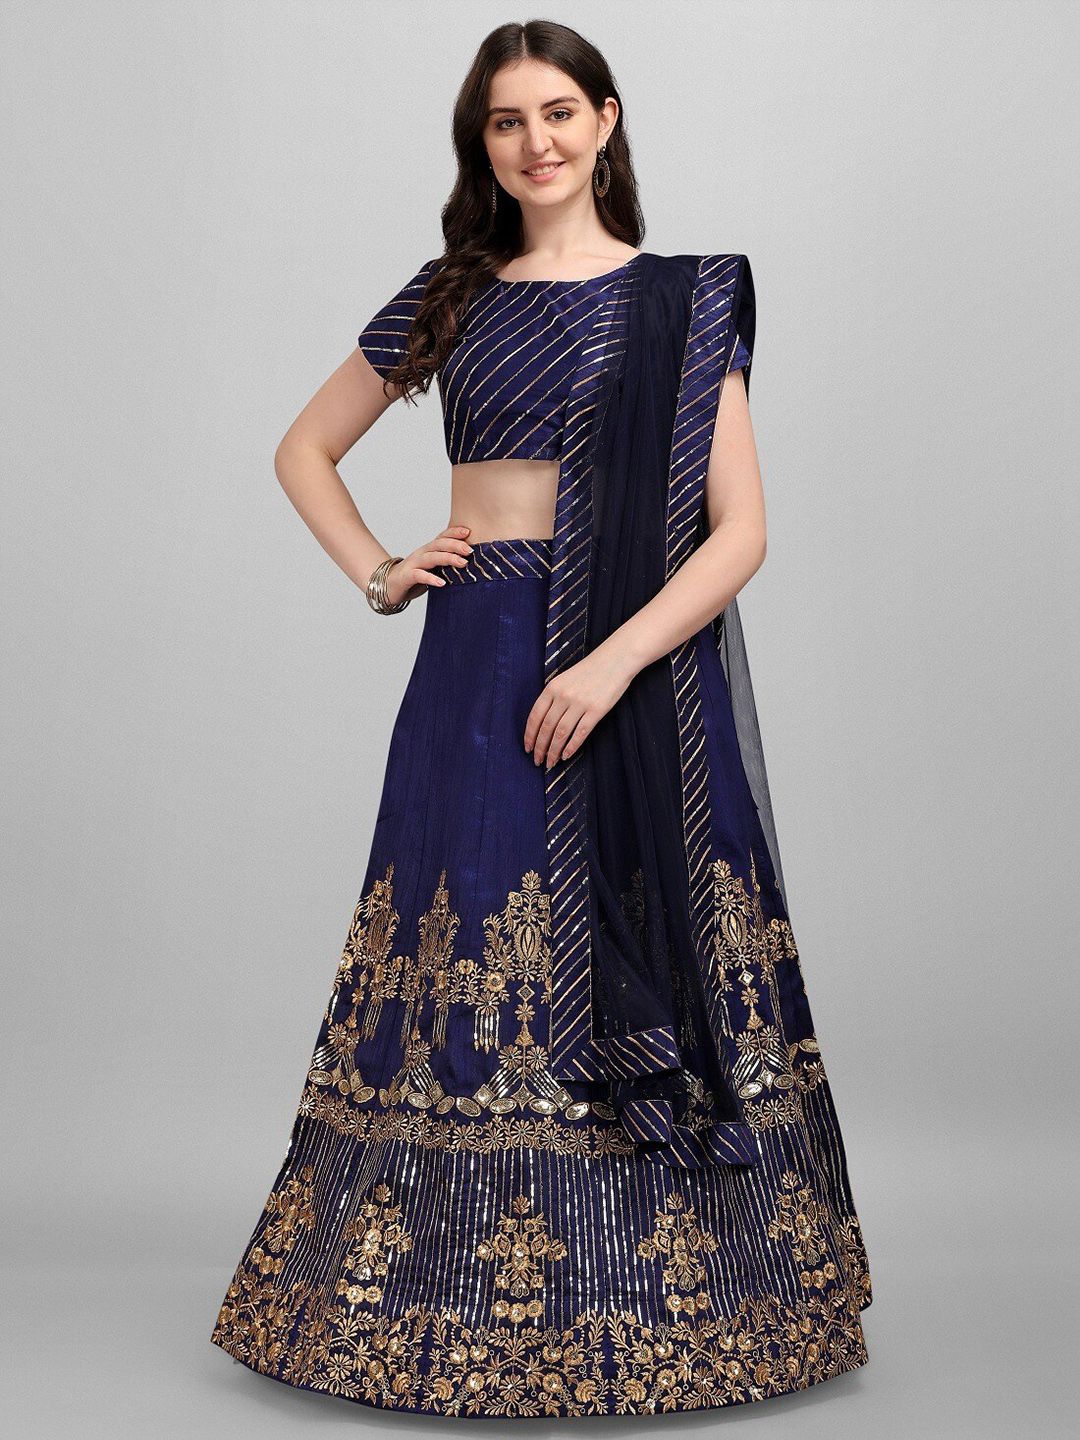 Fashionuma Blue & Gold-Toned Embroidered Semi-Stitched Lehenga & Blouse With Dupatta Price in India